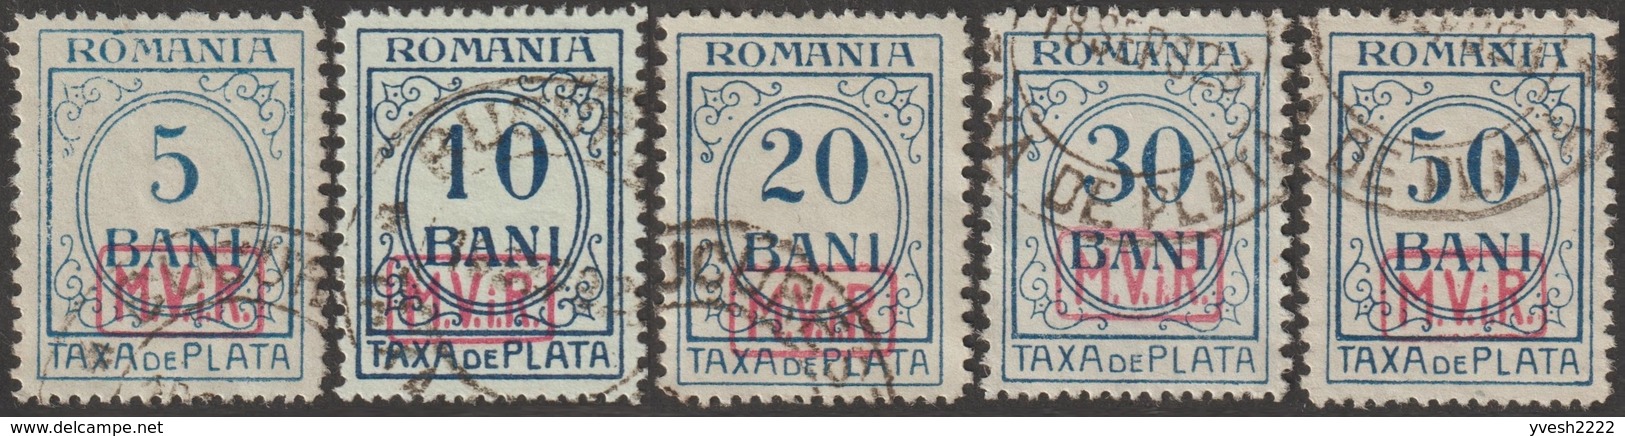 Roumanie 1918 Michel Taxe 1 à 5 Occupation Allemande Taxe Surchargés Oblitérés. Cote 45 €. - Occupations